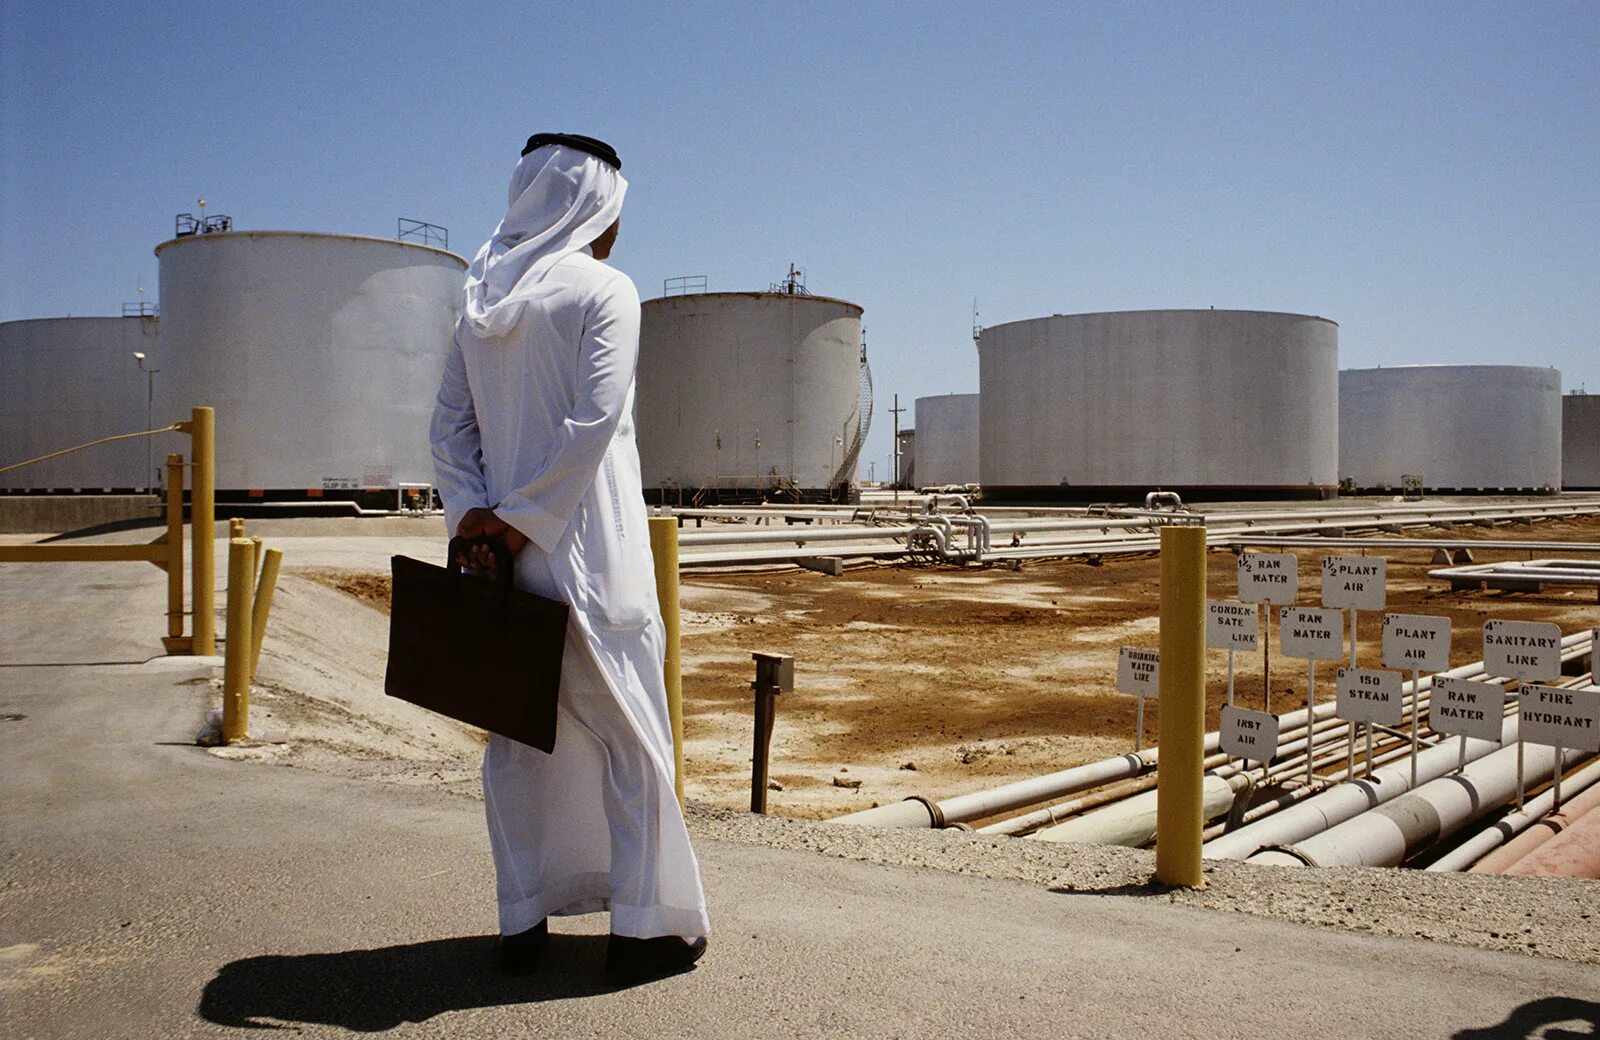 Саудовская Аравия нефть Saudi Aramco. Нефтяная компания в Саудовской Аравии Aramco. Добыча нефти Сауди Арамко. Завод в Саудовской Аравии Арамко.